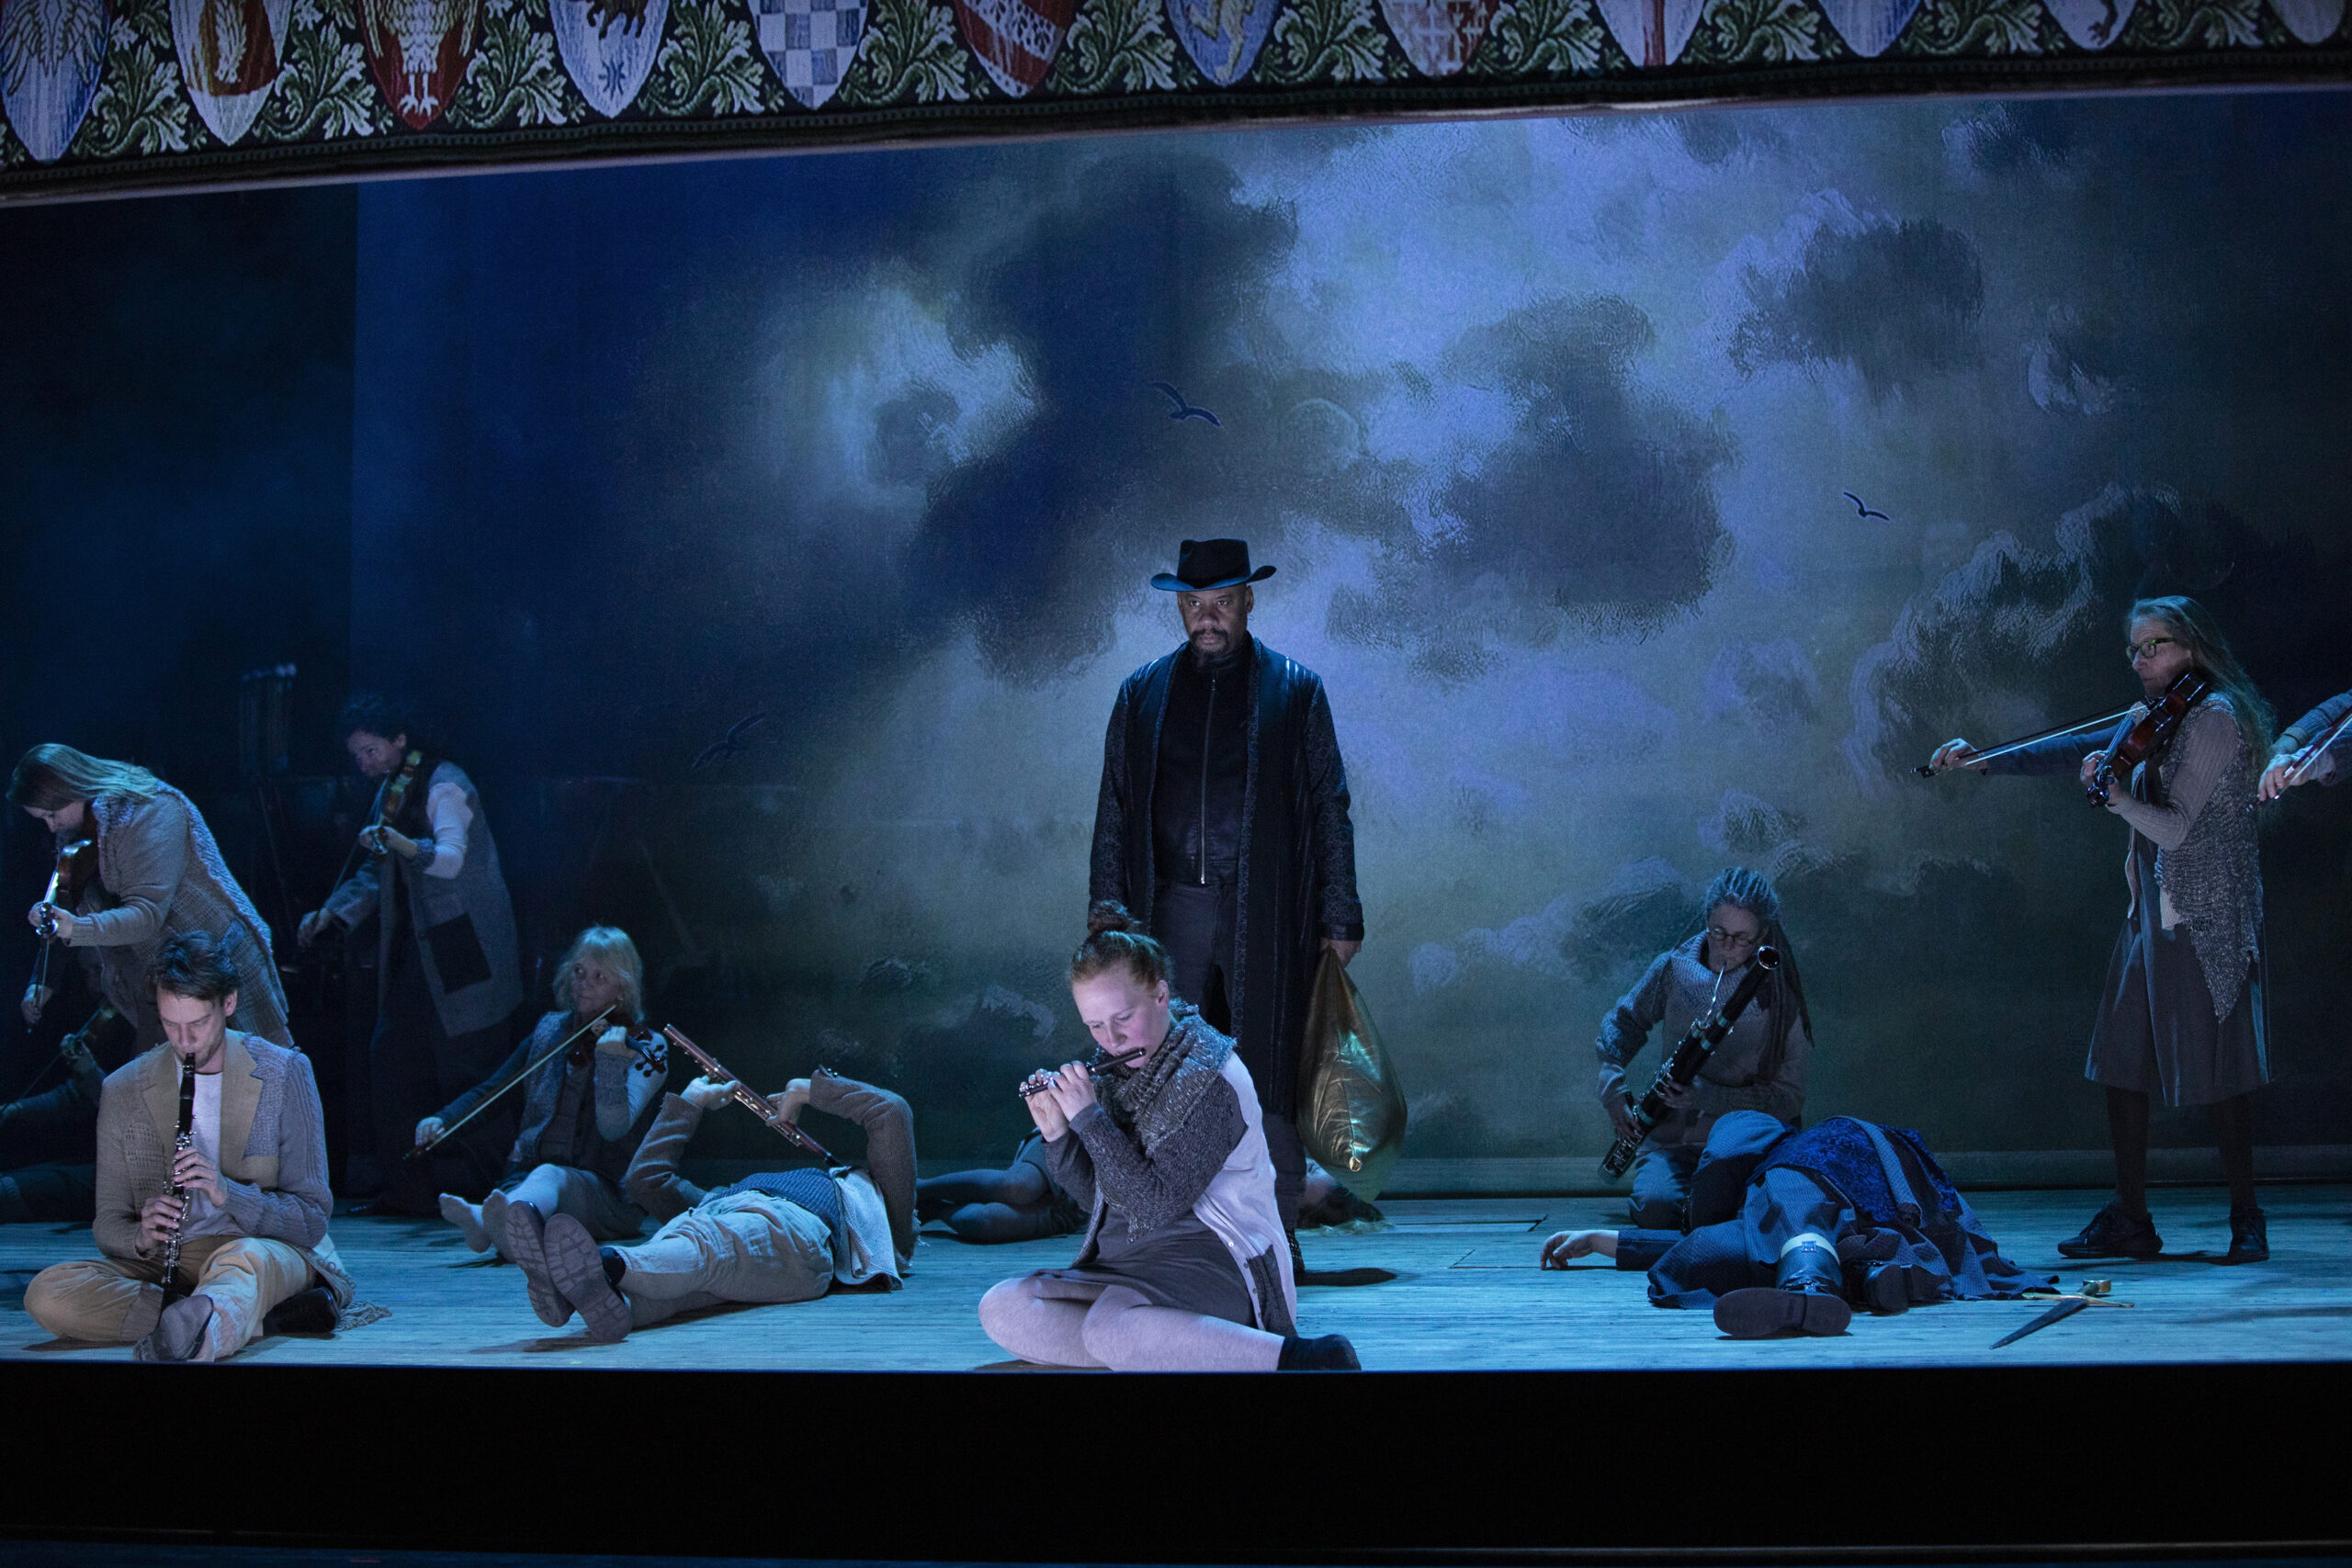 Op een donker podium liggen meerdere mensen met instrumenten op de grond terwijl een man in het midden staat met een zwarte hoed op